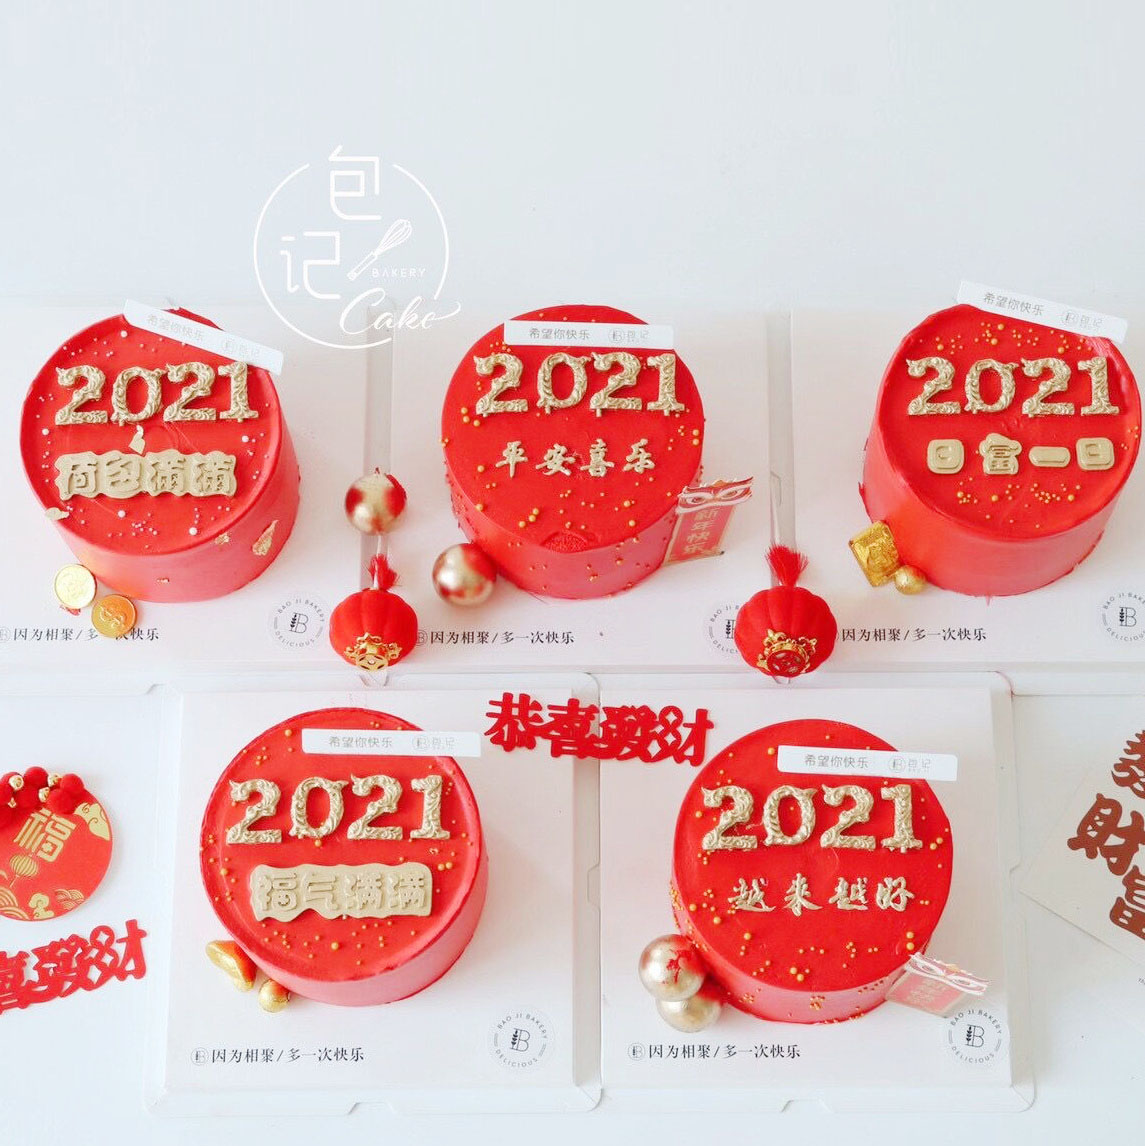 新年烘焙蛋糕装饰日富一日中文祝福硅胶模具2021福气满满新春摆件